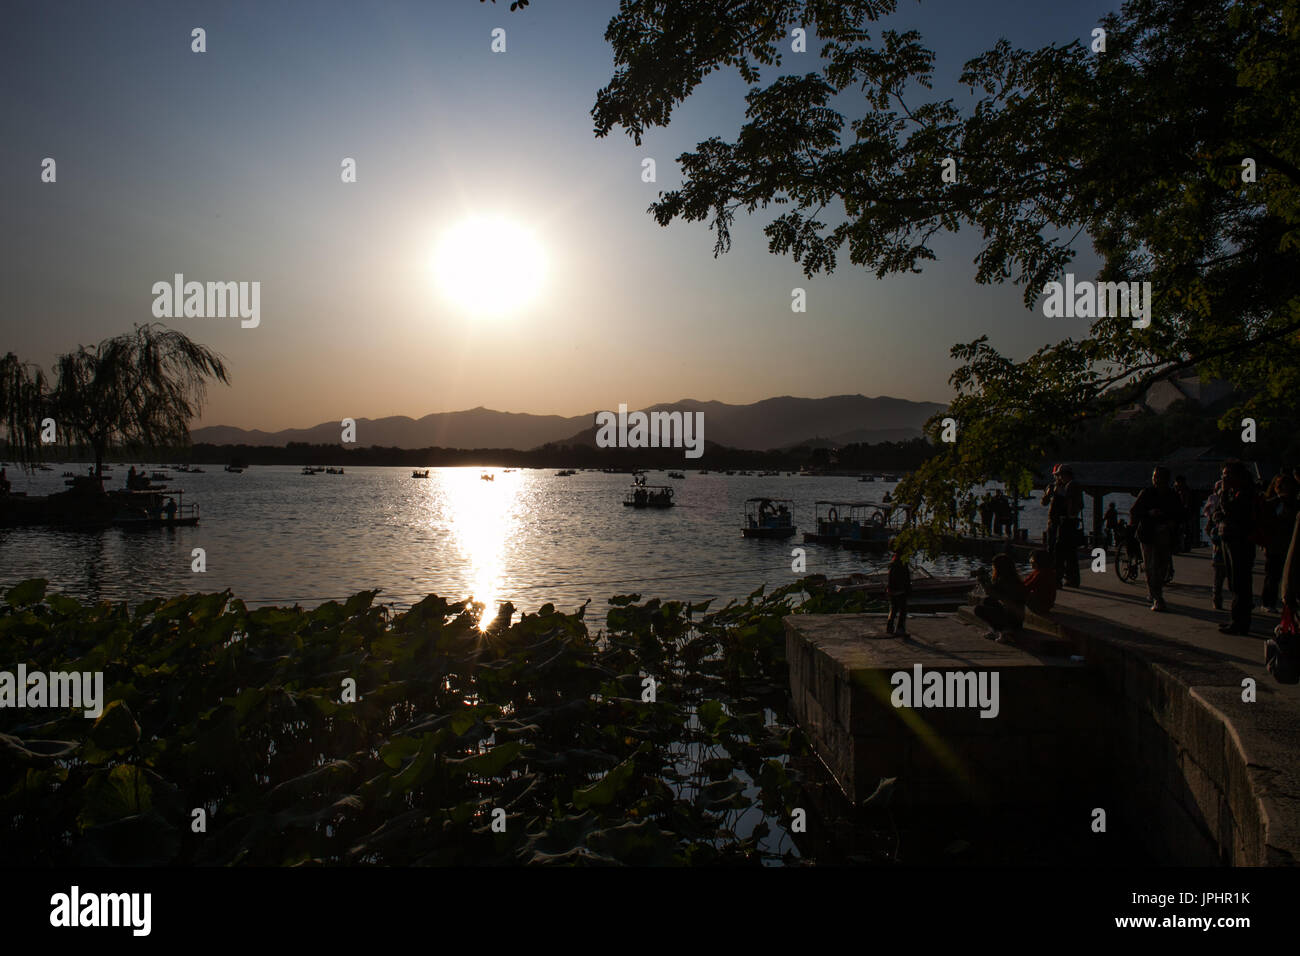 Le Lac de Kunming, Beijing, Chine Banque D'Images